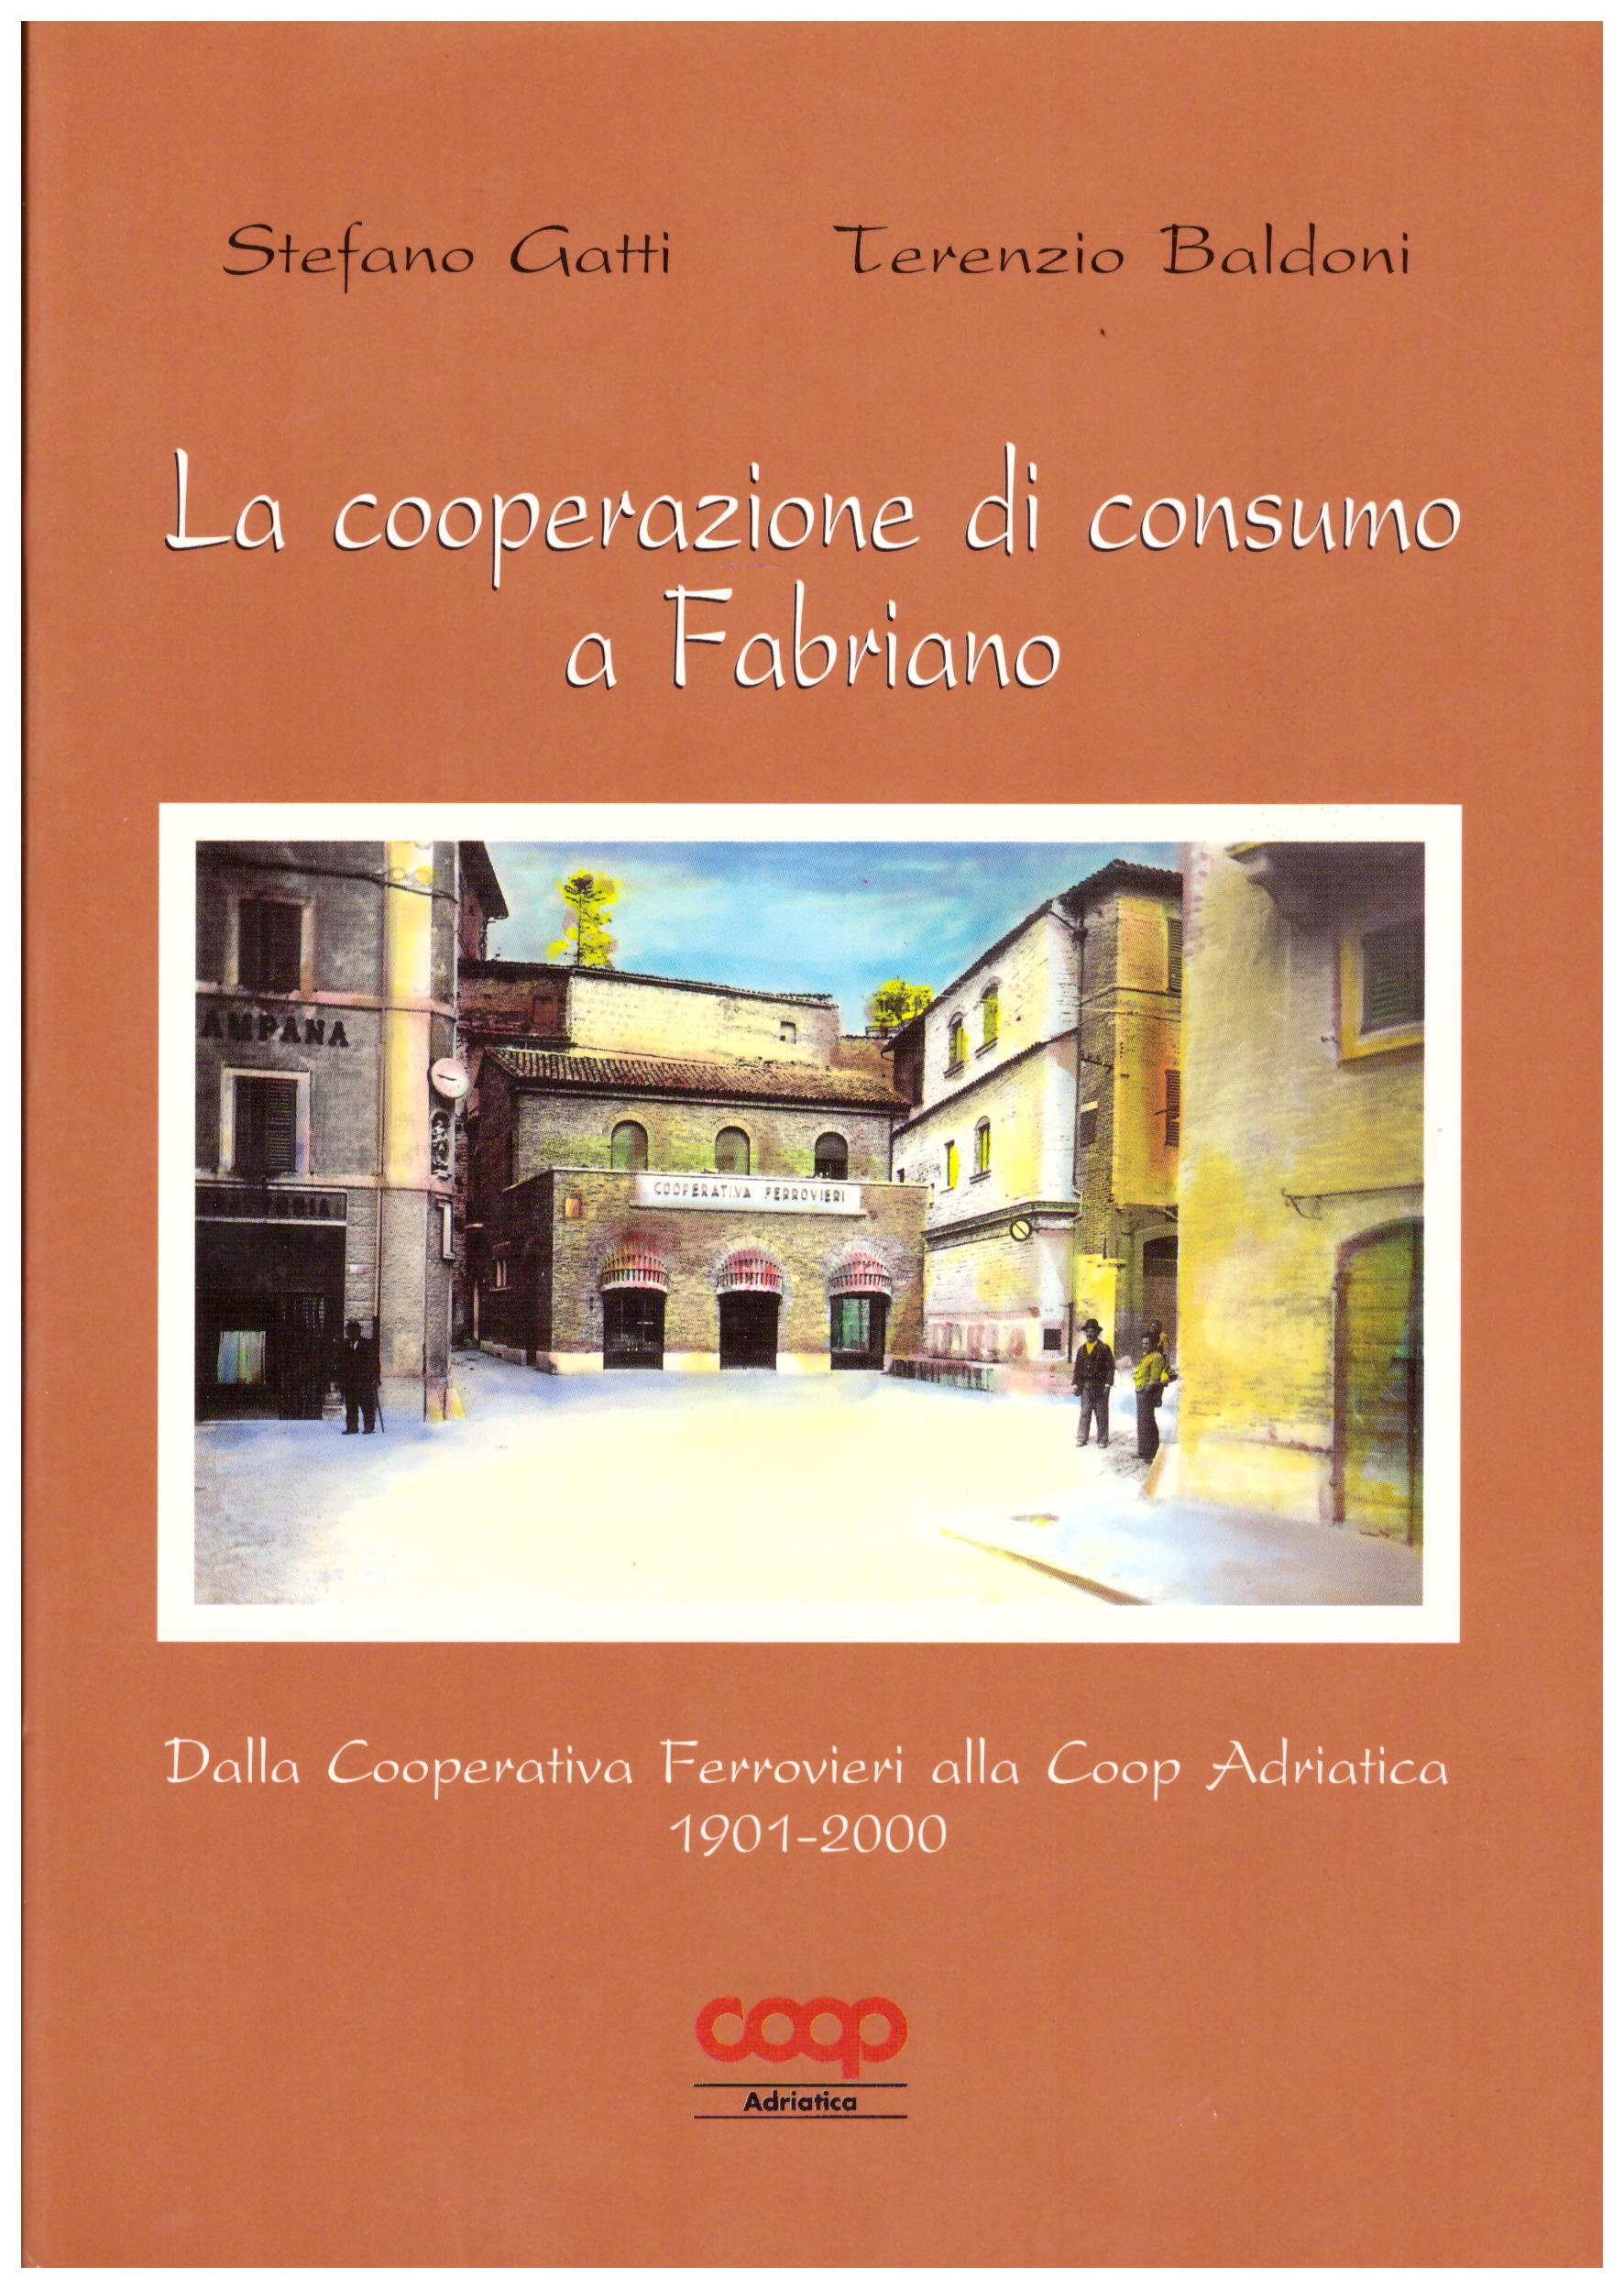 Titolo: La cooperazione di consumo a Fabriano Autore : Stefano Gatti, Terenzio Baldoni Editore: Coop Adriatica